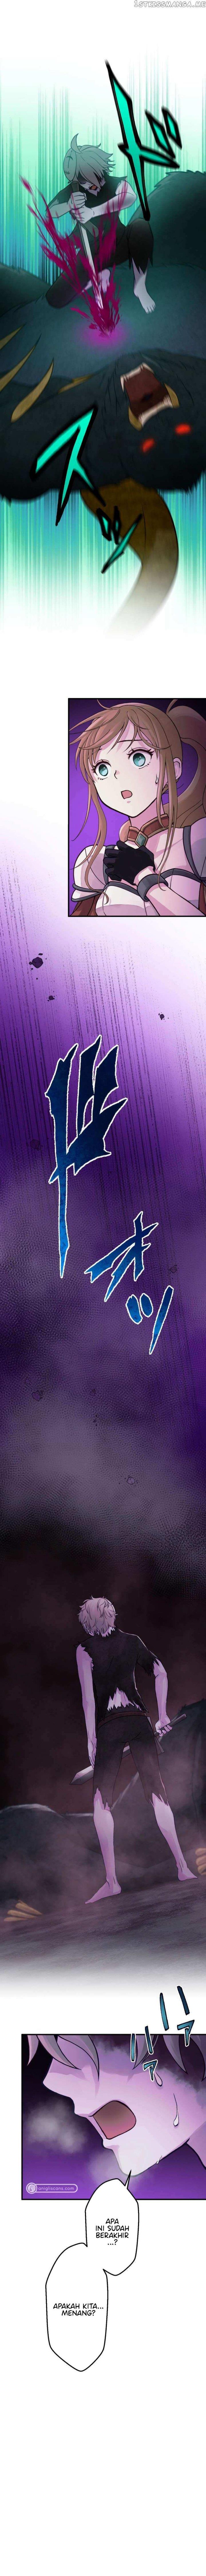 Undead King ~Teihen Bouken-sha, Mamono no Chikara de Shinka Musou~ Chapter 31